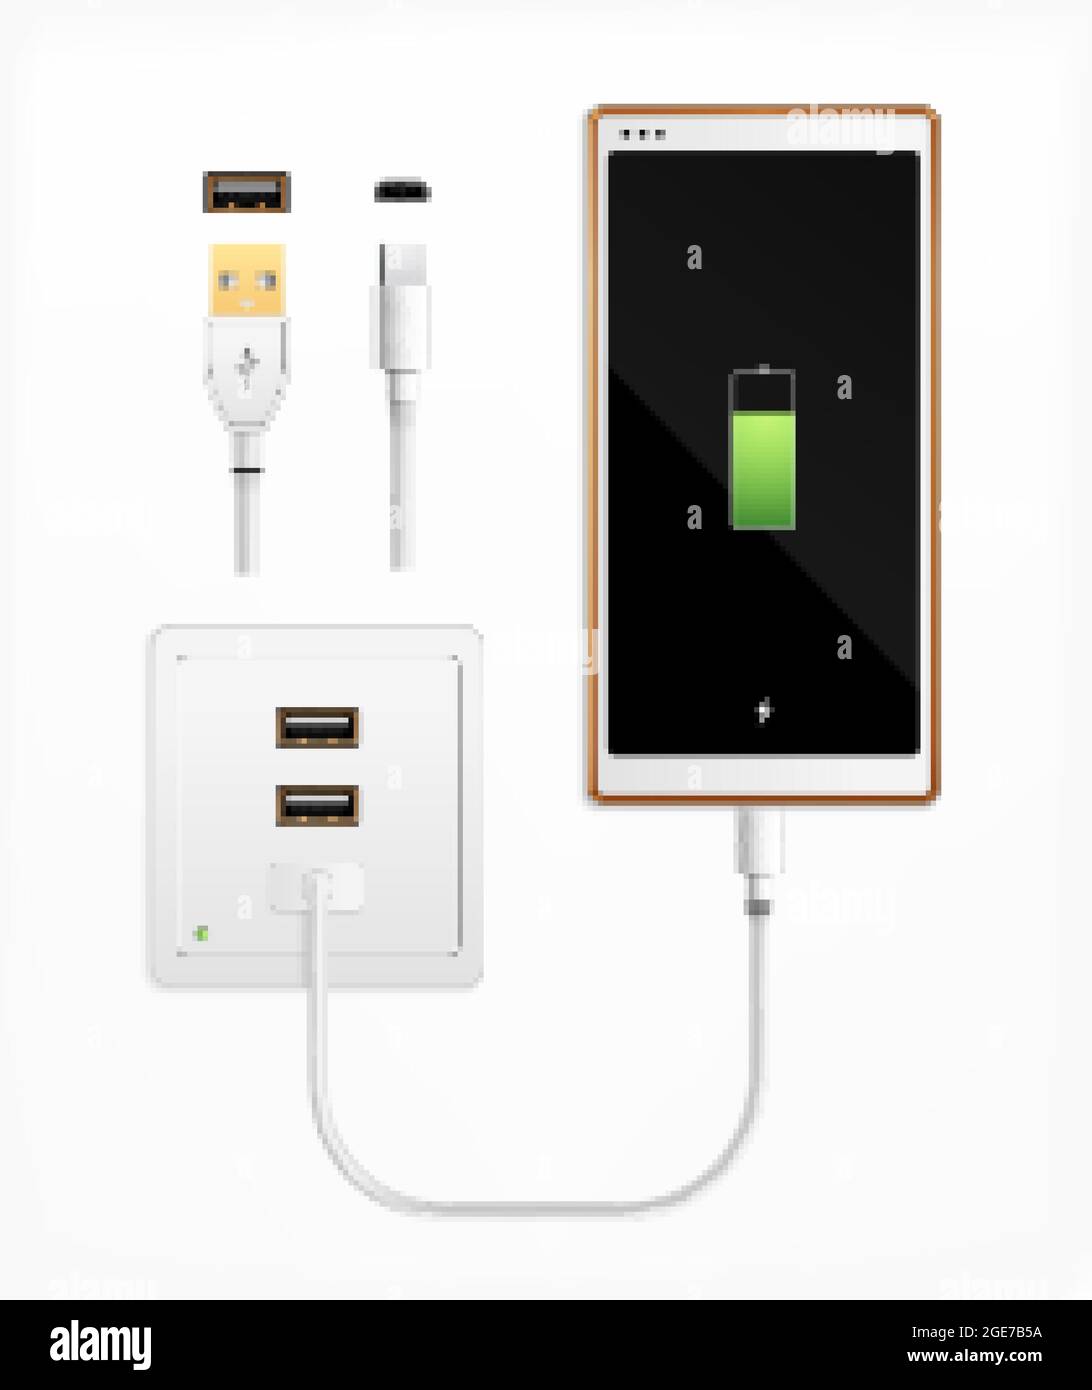 Usbport plug in Charge composizione realistica con set di connettori per cavo isolati, porte, presa e illustrazione vettoriale per smartphone Illustrazione Vettoriale